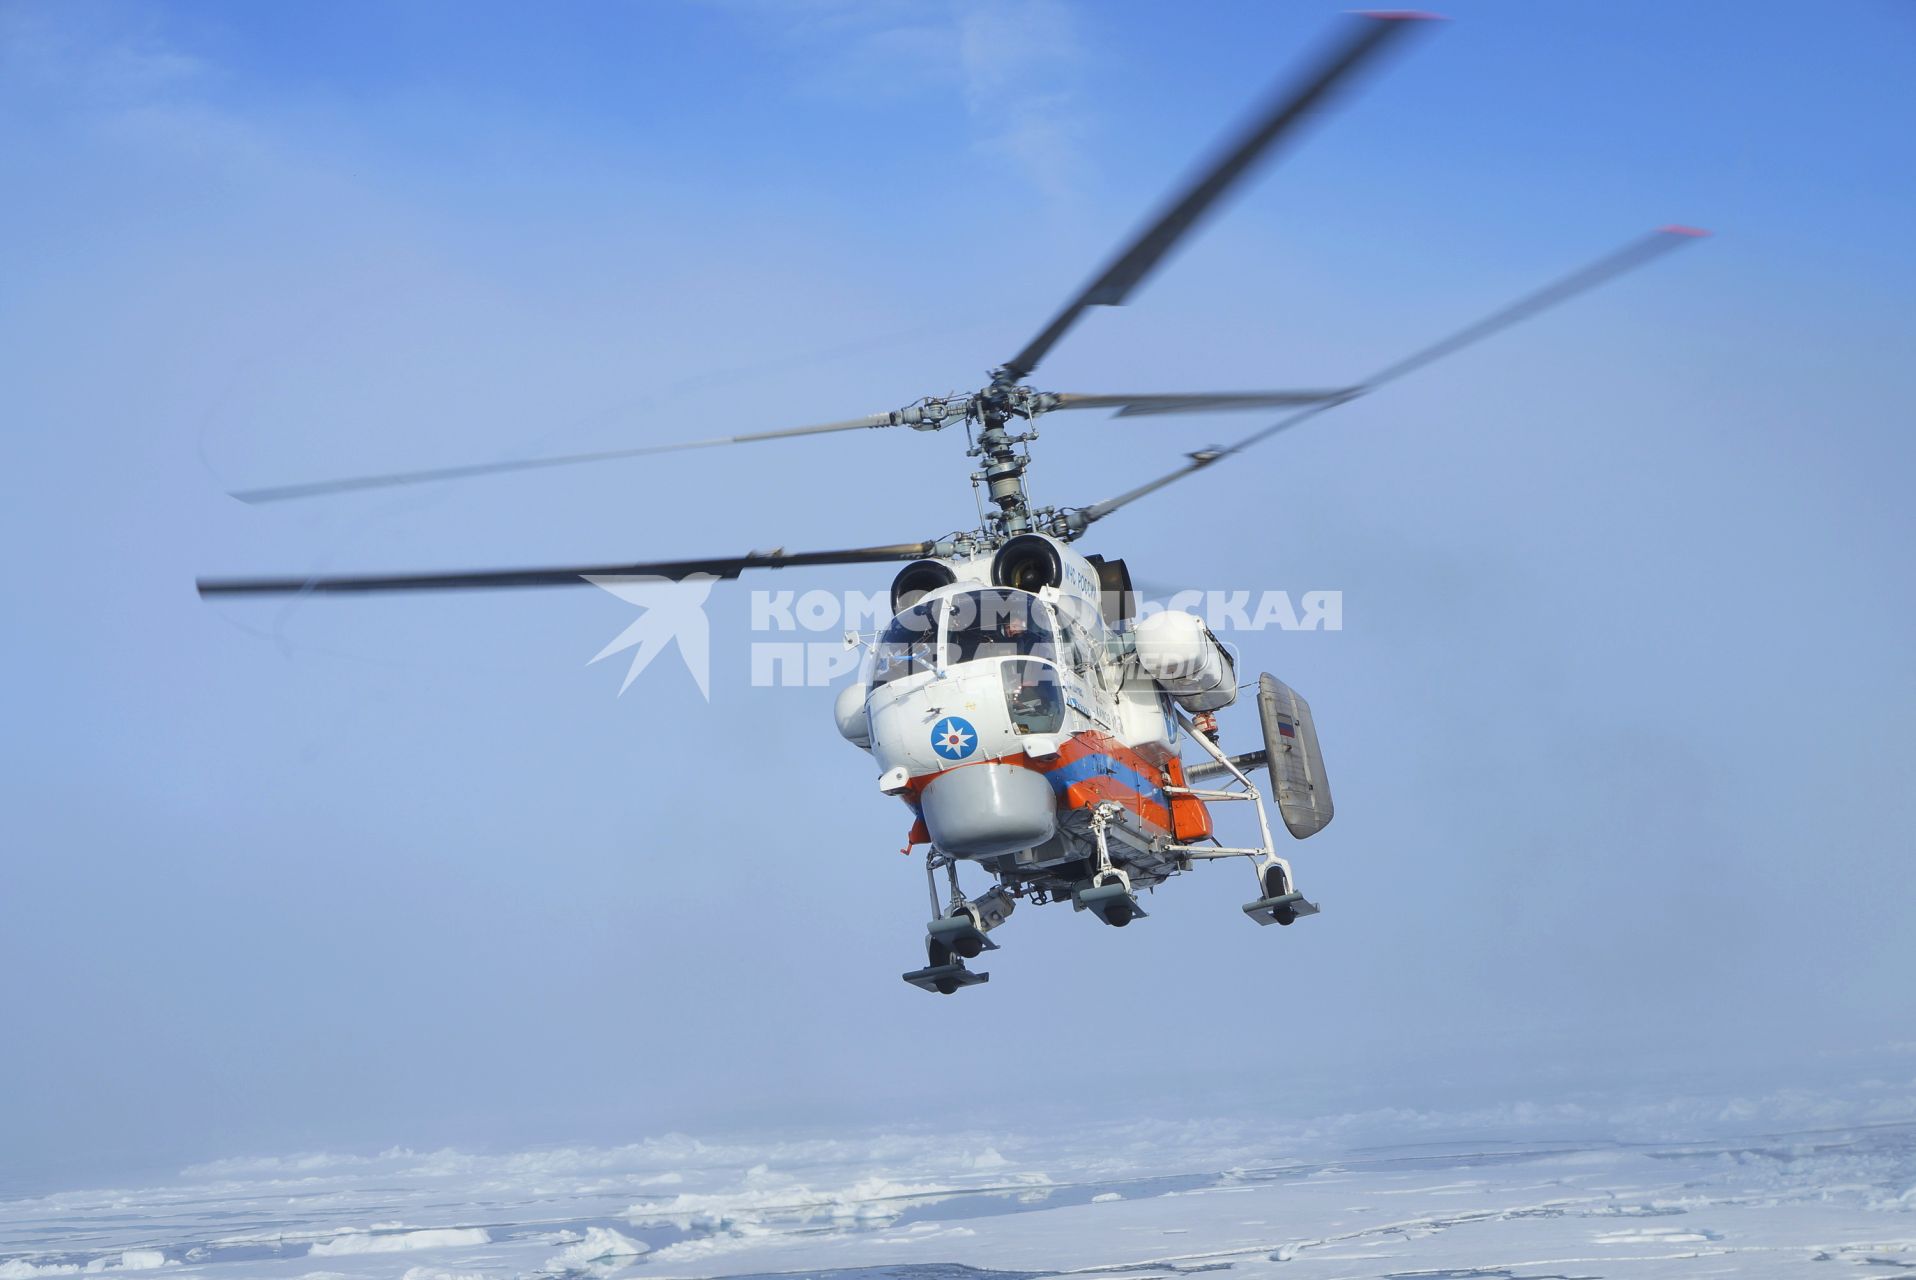 Вертолет Ка-32 МЧС России взлетает с палубы ледокола \"Капитан Драницын\", во время похода на северный полюс, для эвакуации сезонной дрейфующей станции \"Северный полюс 2015\". Северный ледовитый океан